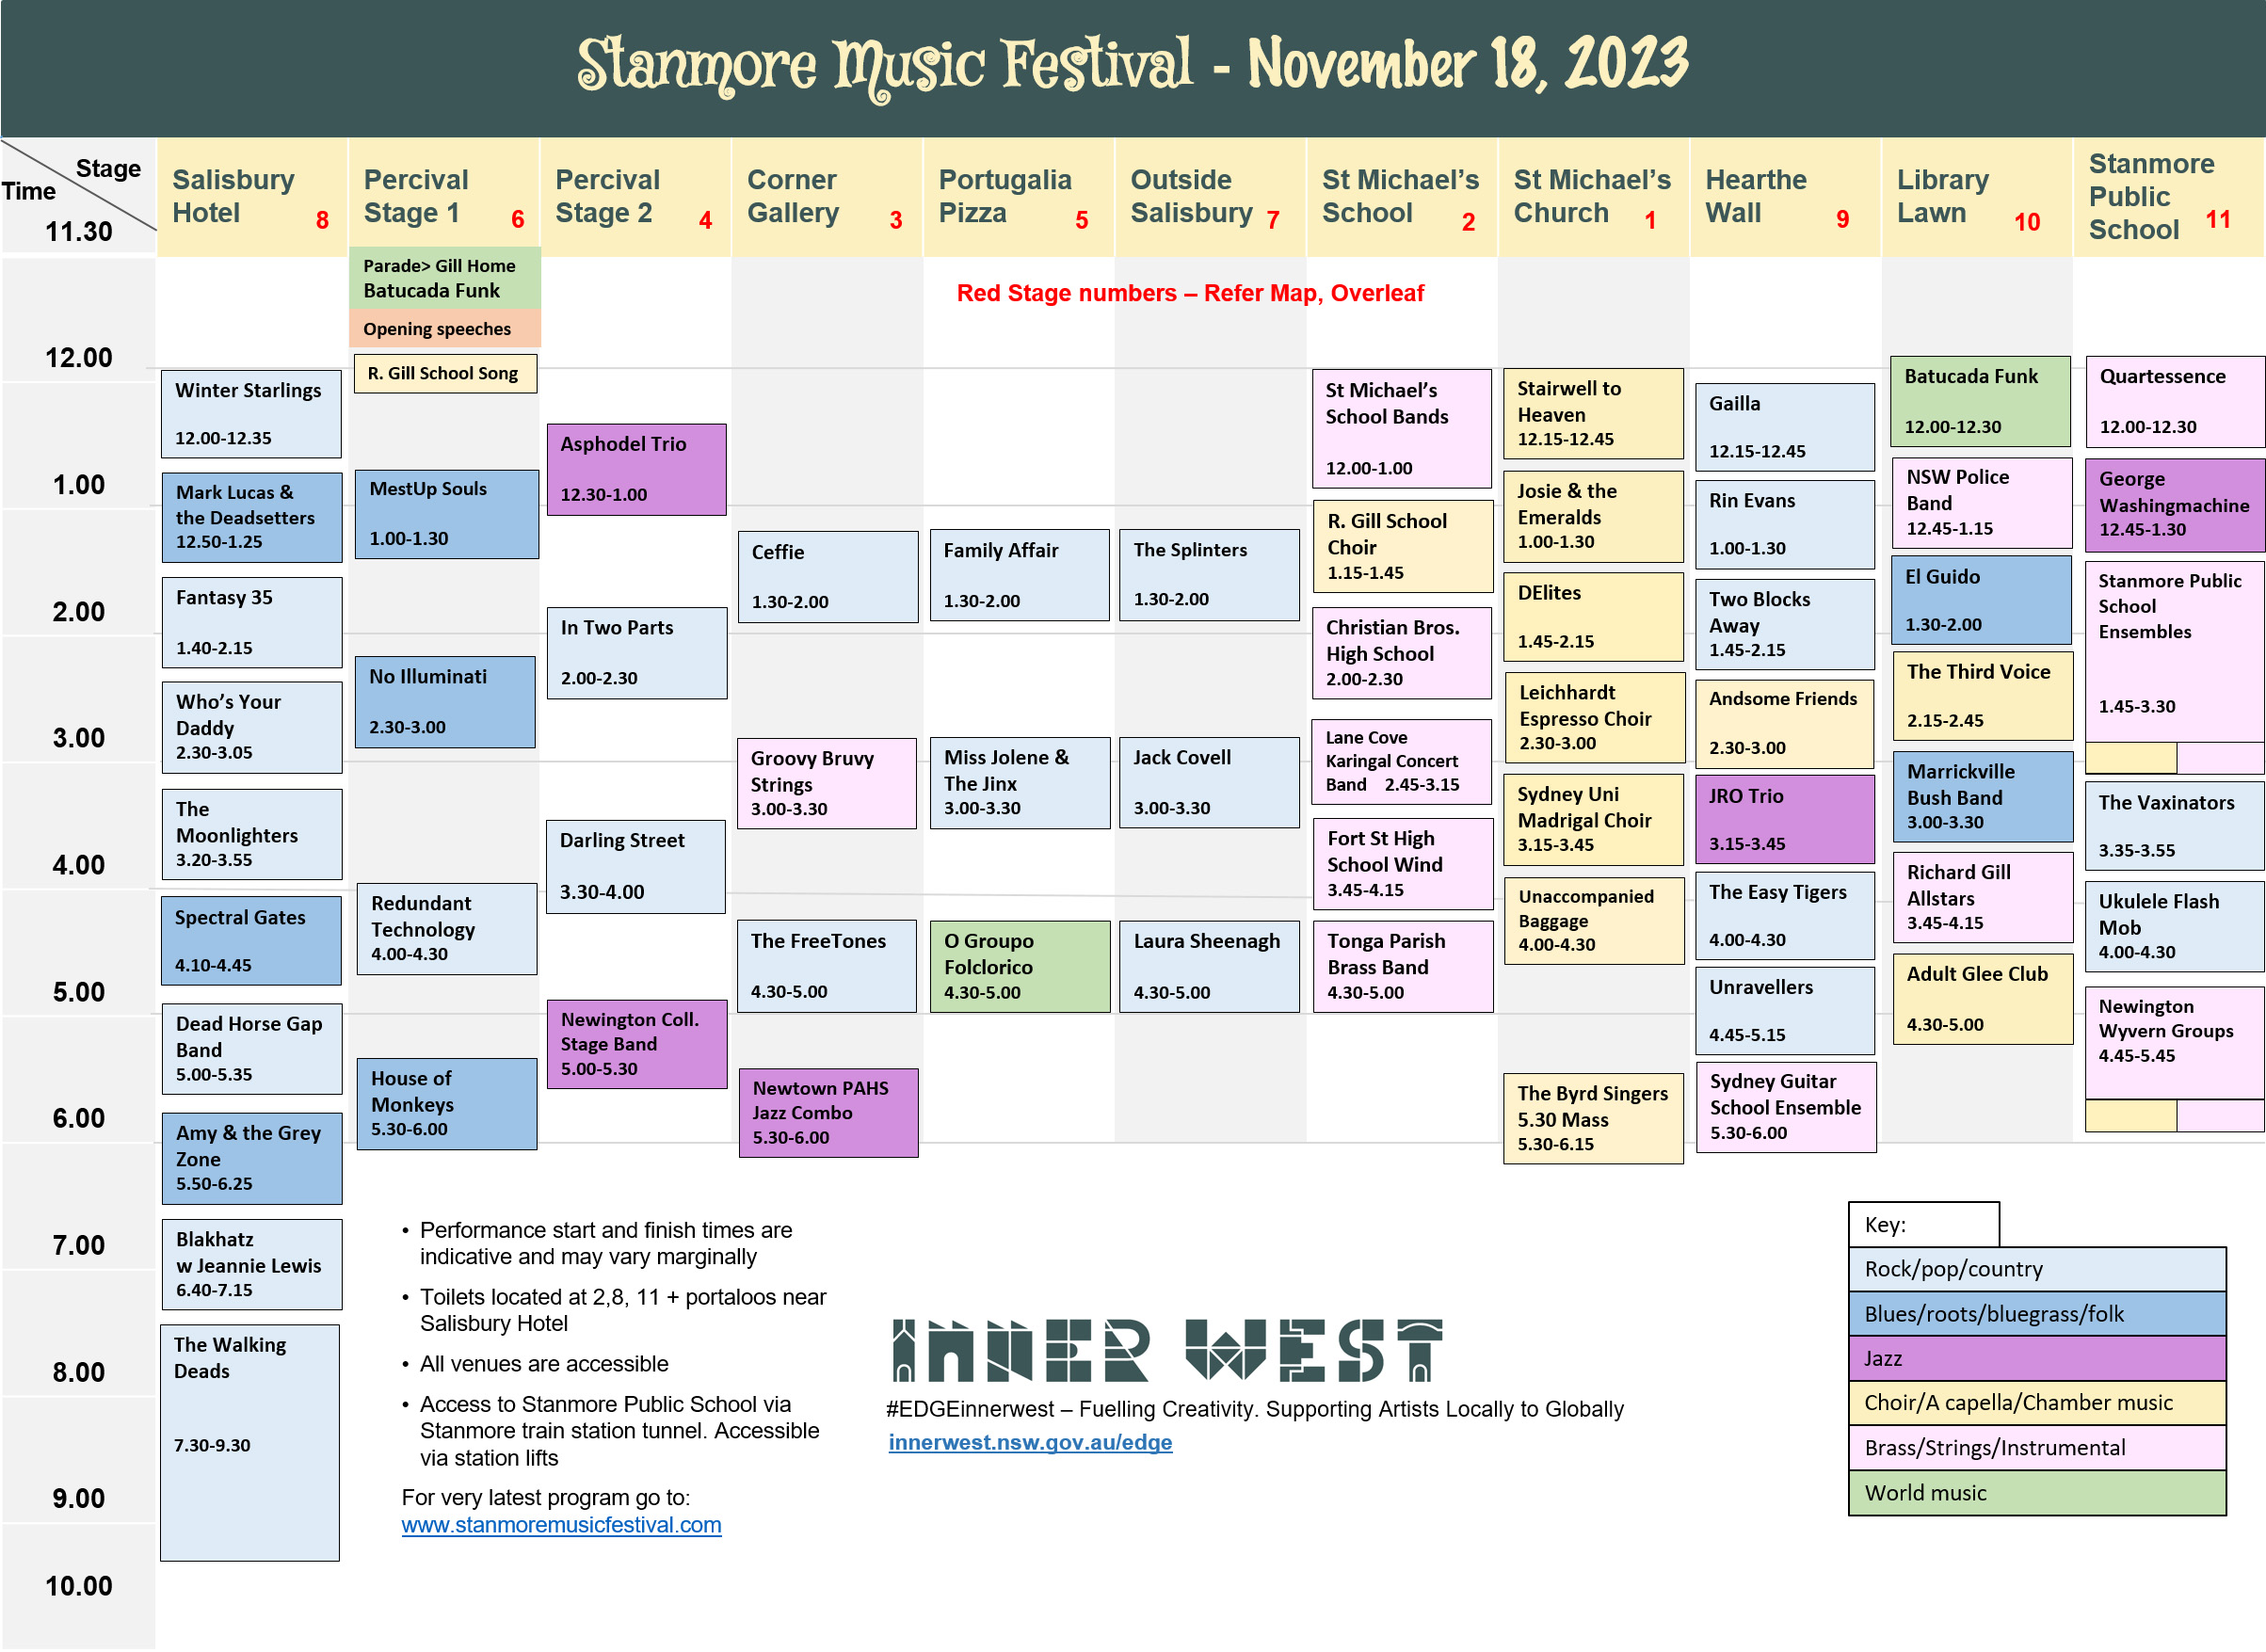 Stanmore Music Festival Program 2023